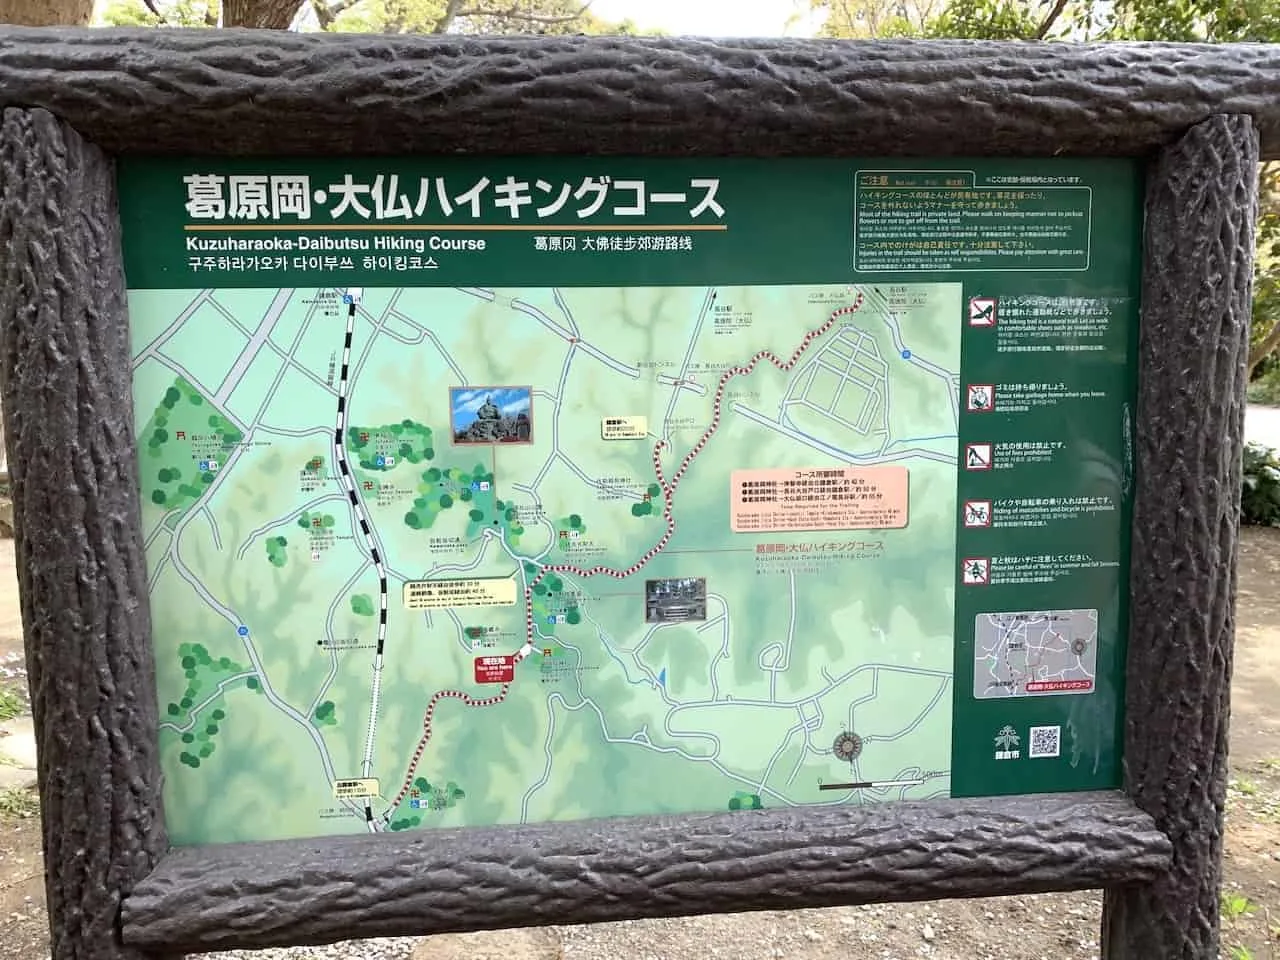 Daibutsu Hiking Course Map